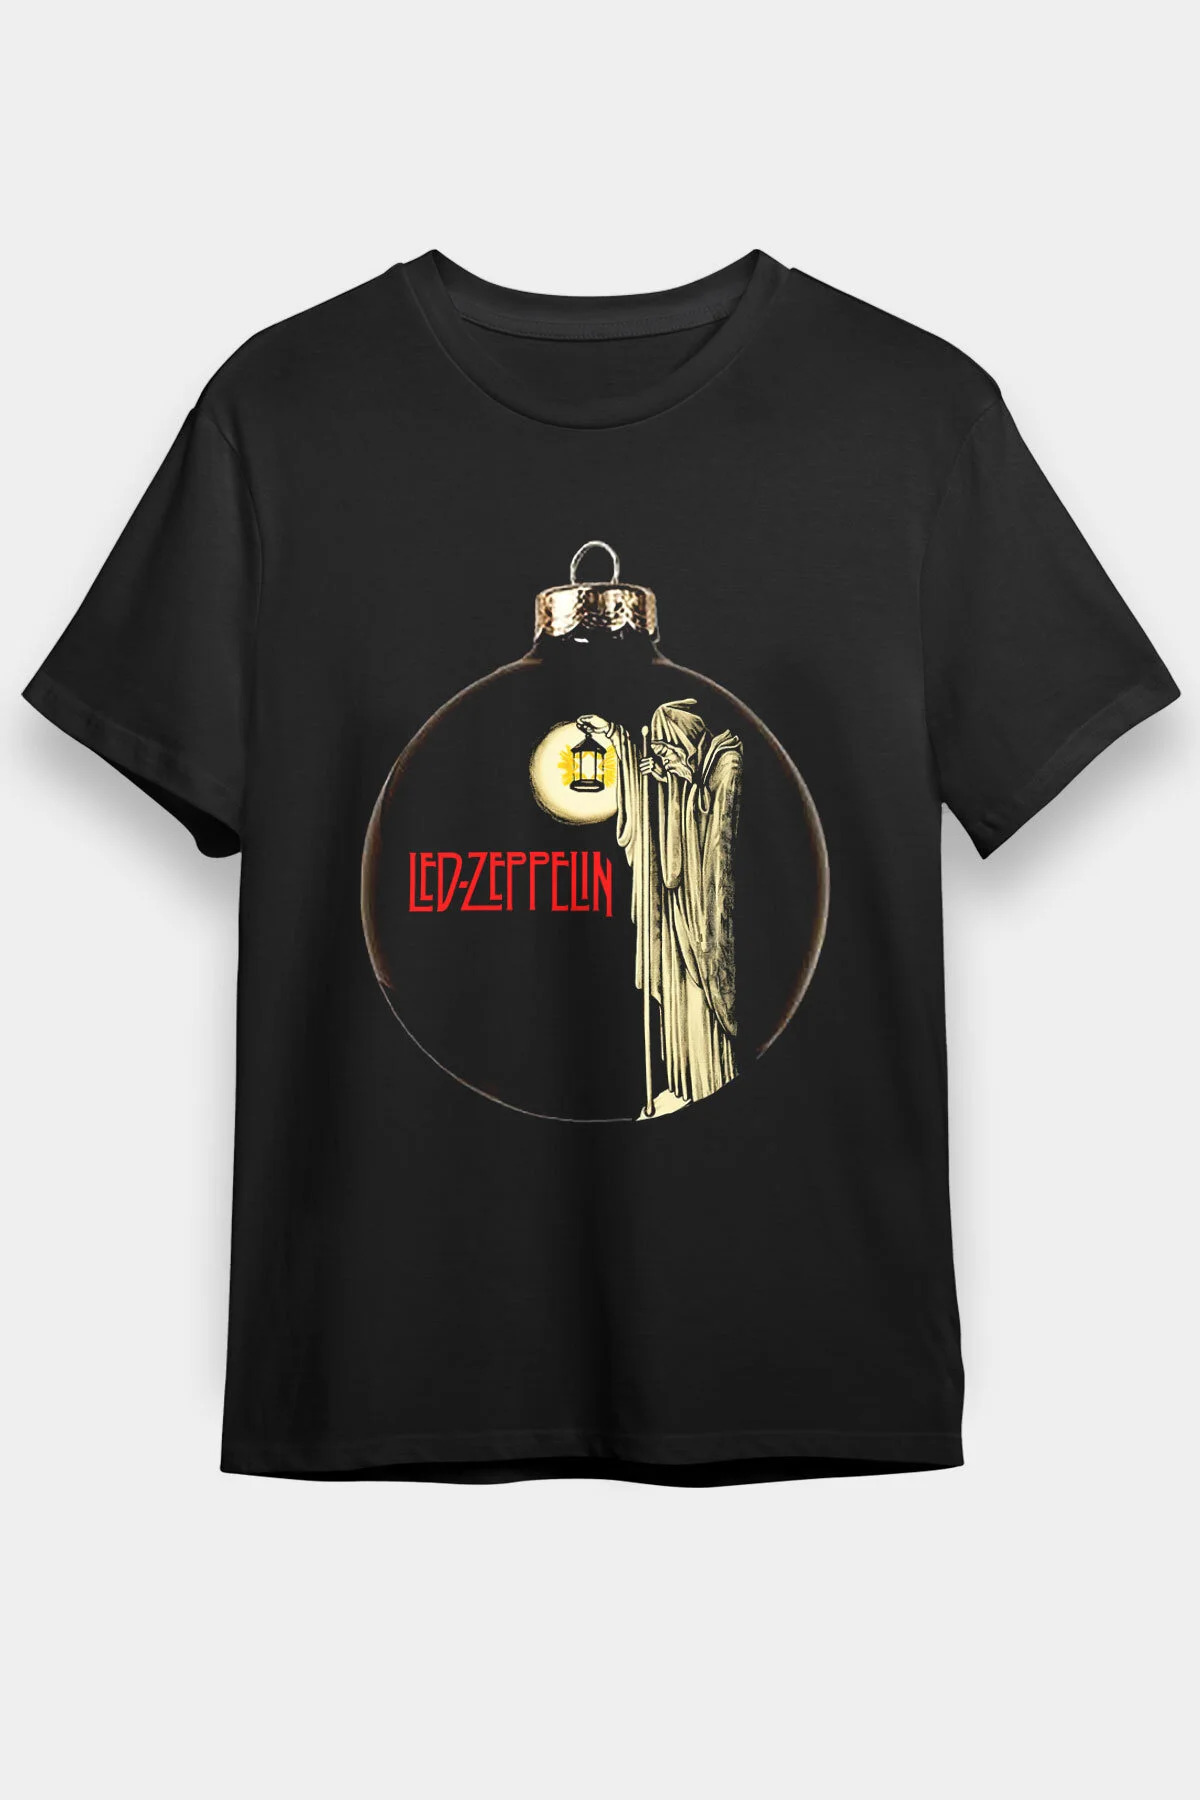 Led Zeppelin , Music Band ,Unisex Tshirt 17/